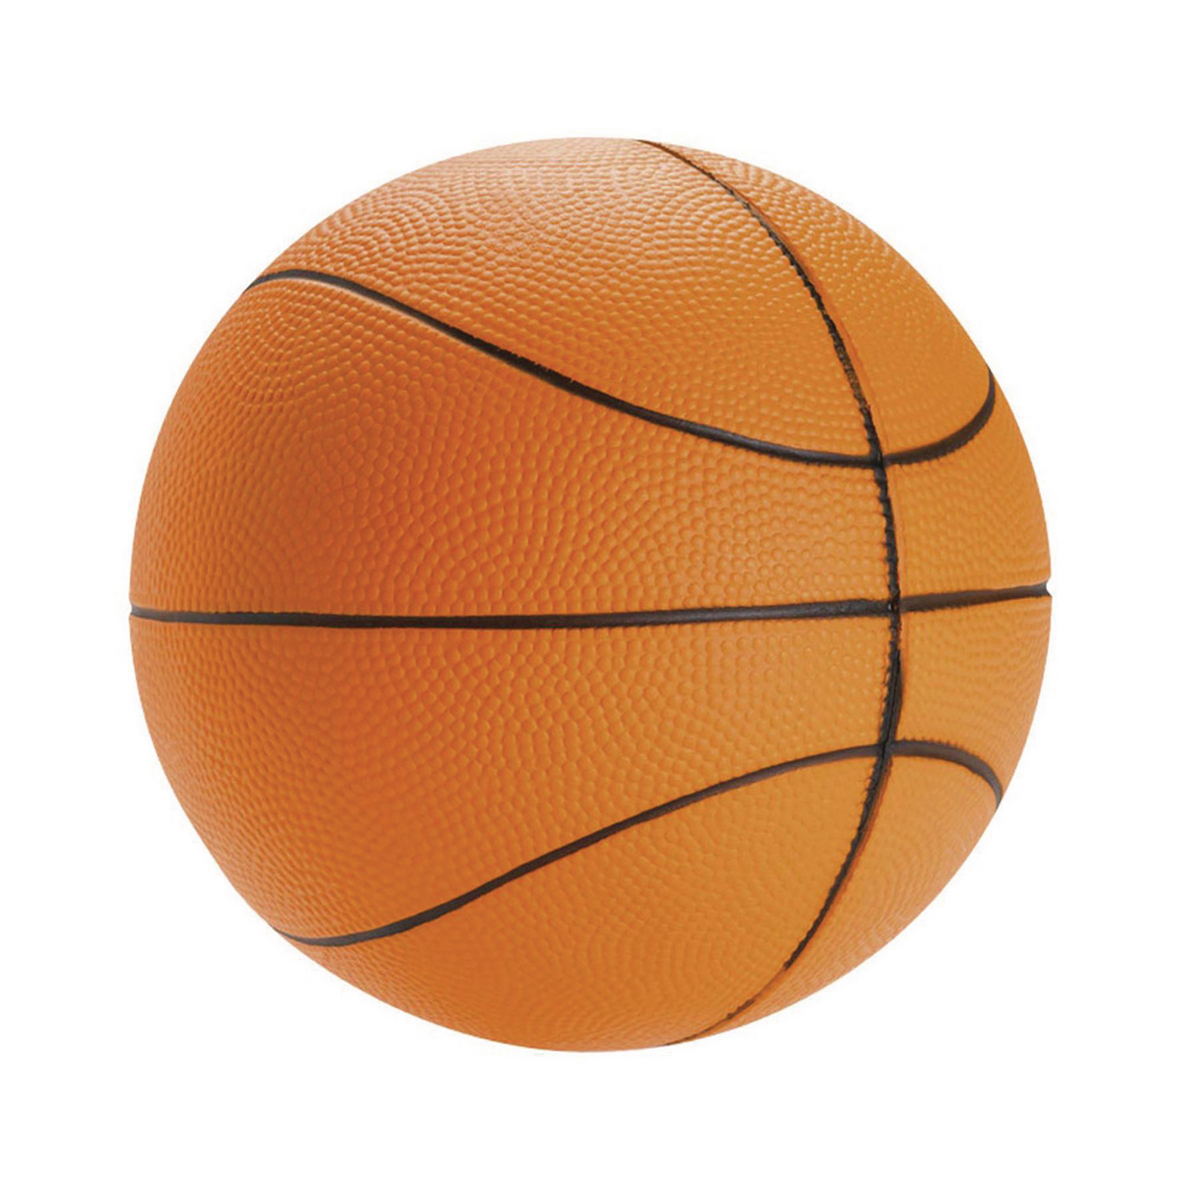 Panier De Basket Mural, Mini Panier De Basket, Mini Panneau, Mini Cerceau  Et Ballon, Panier De Basket Intérieur avec Filet De Basket, Filet De  Cerceau De But De Basket-Ball Suspendus : 